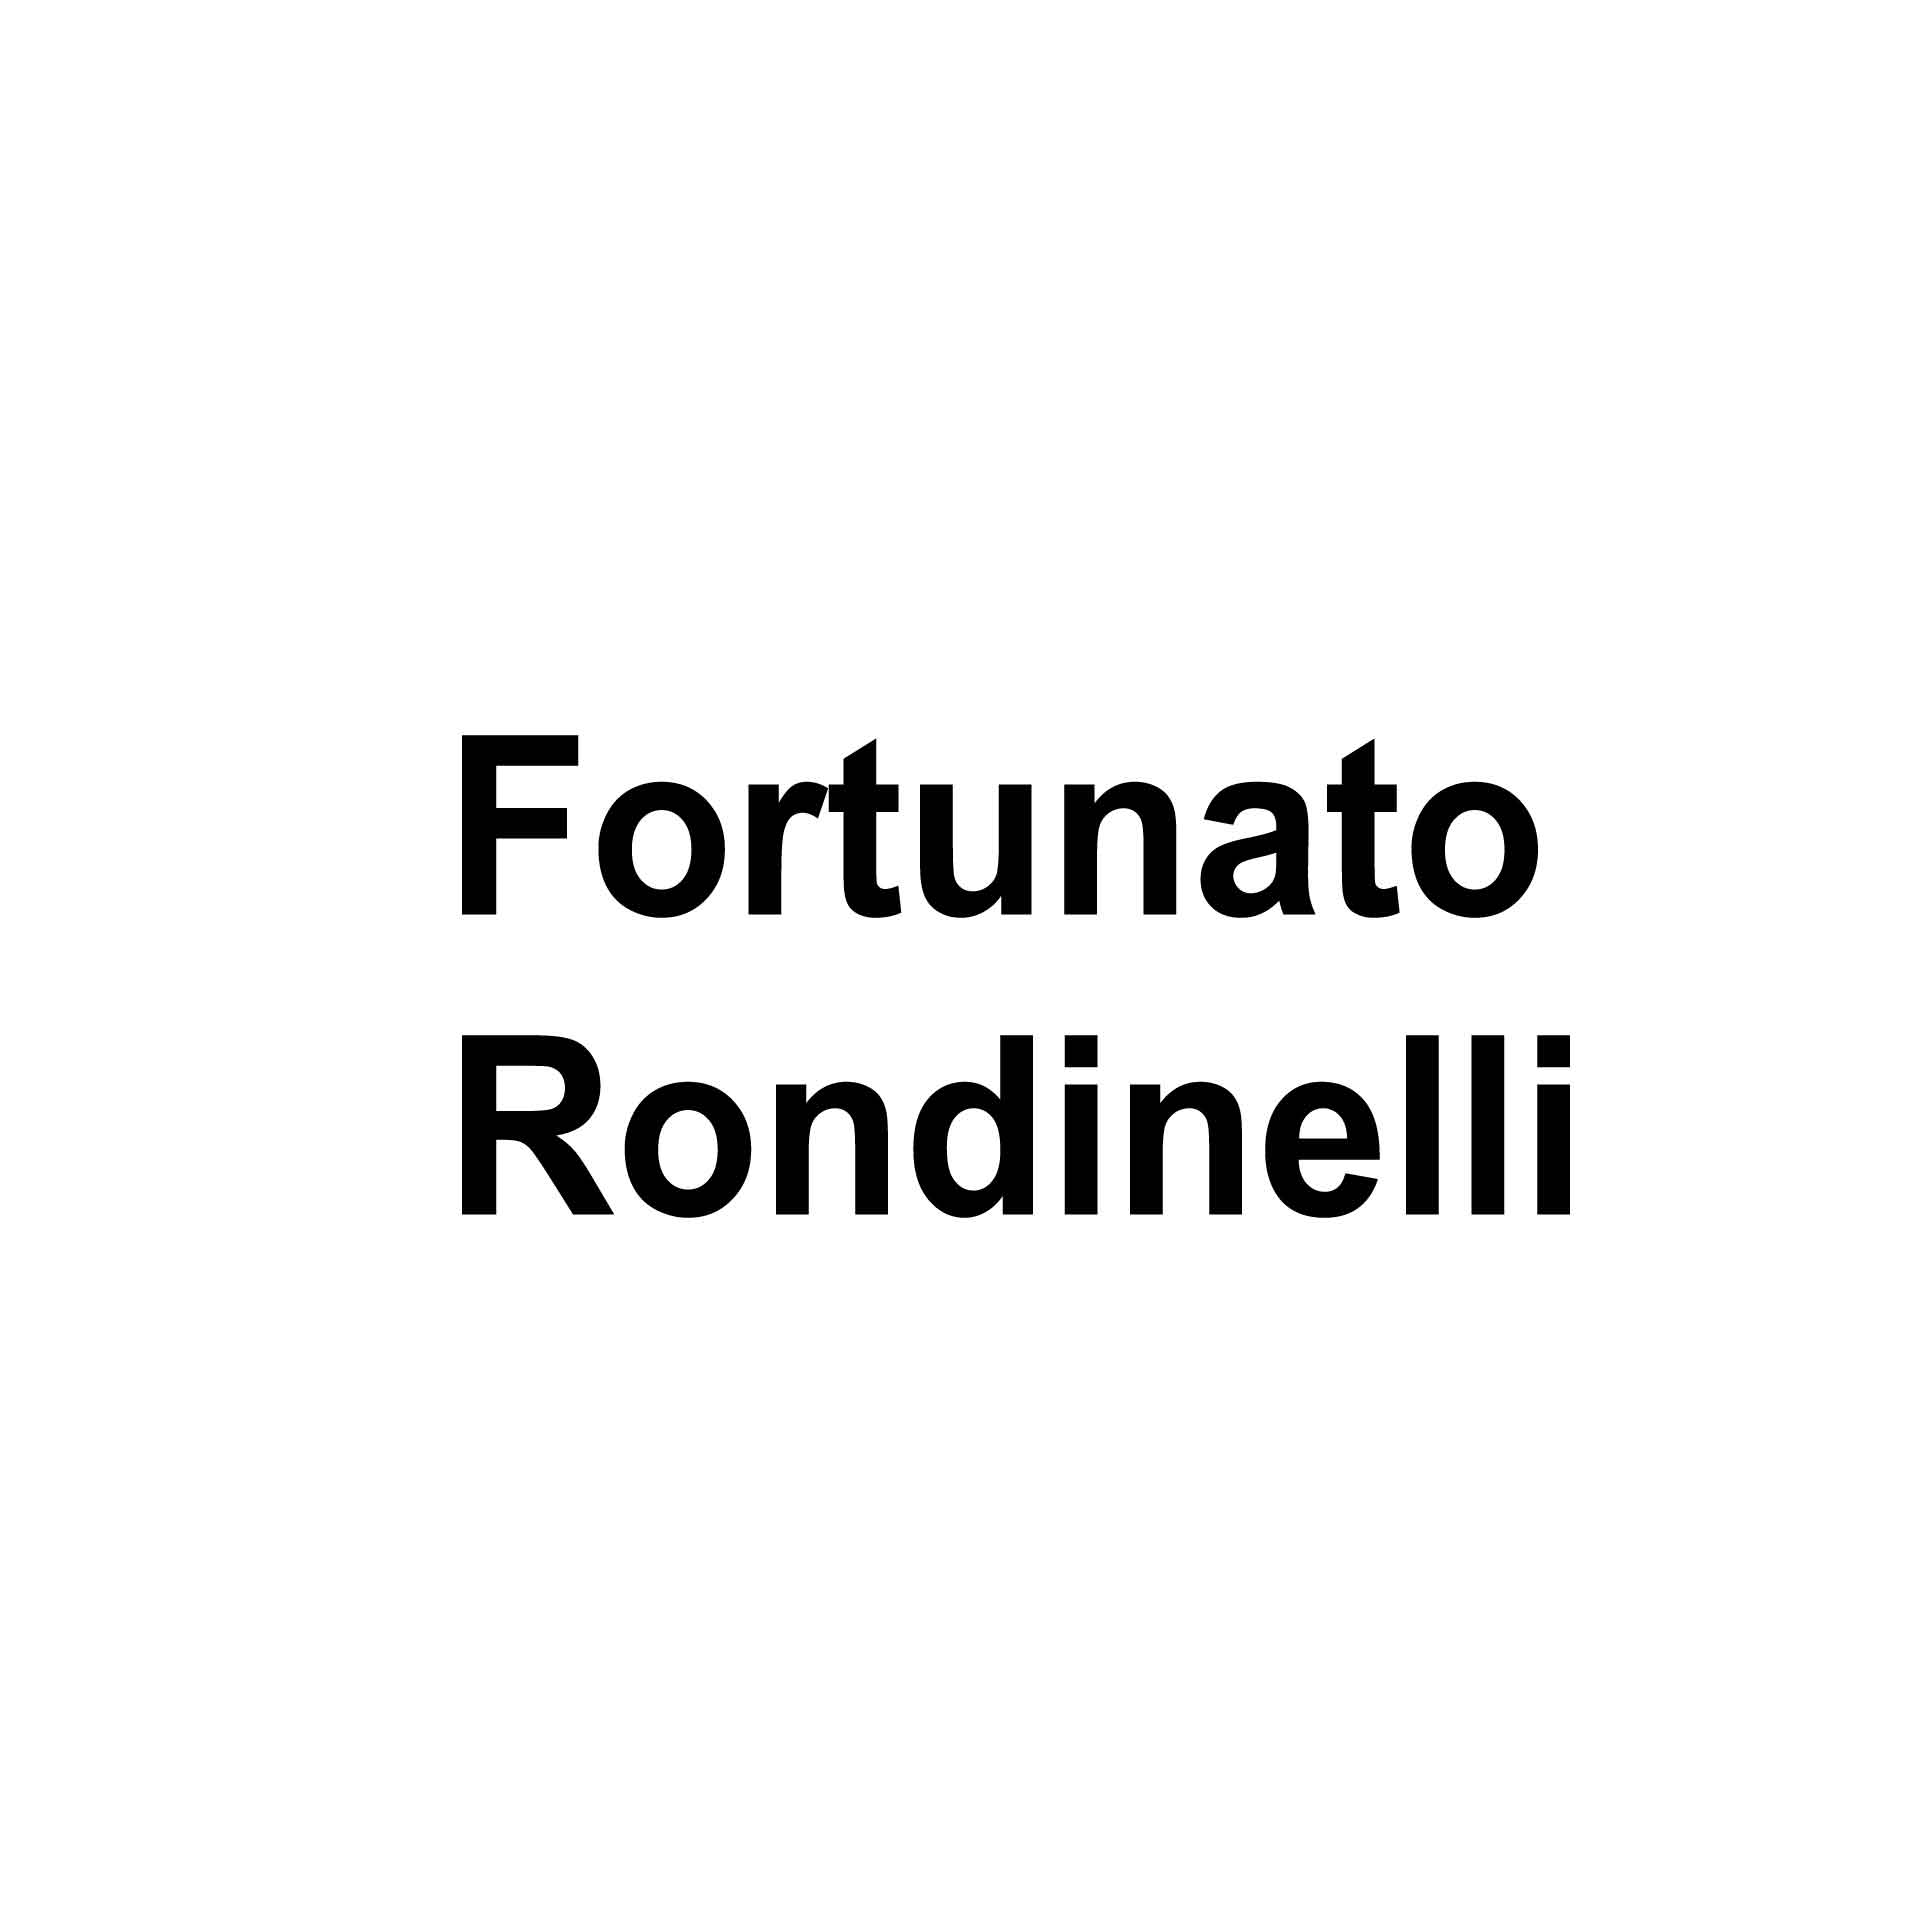 Fortunato Rondinelli